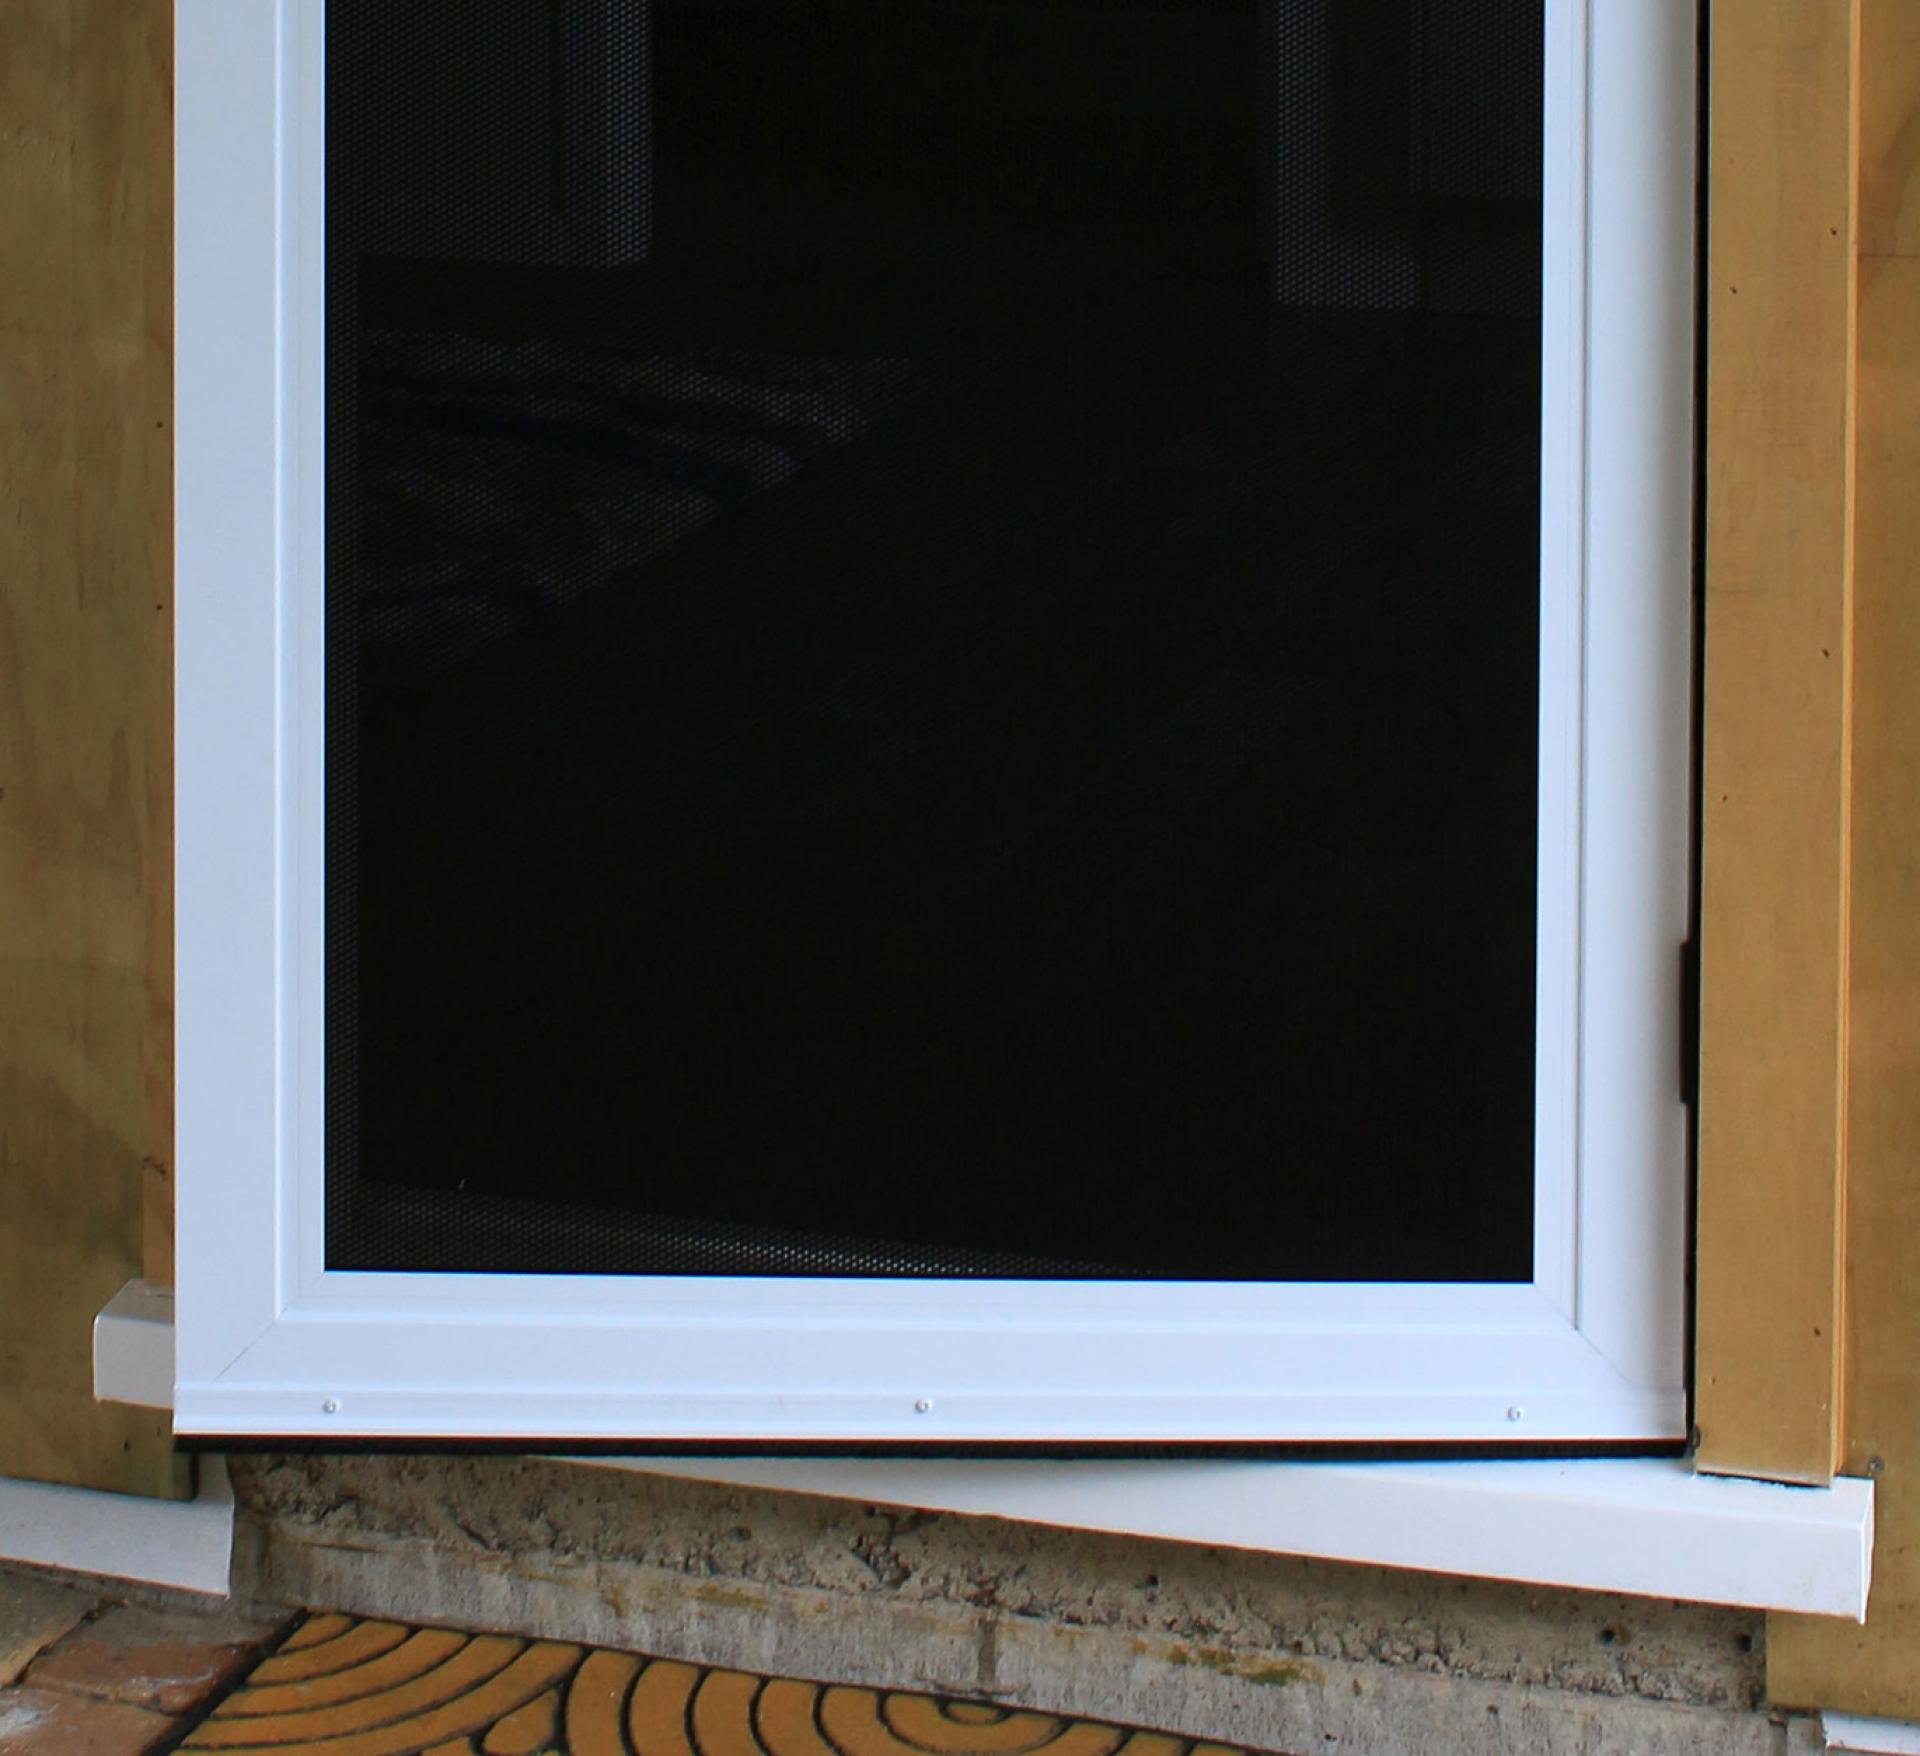 Image of man installing screen on door